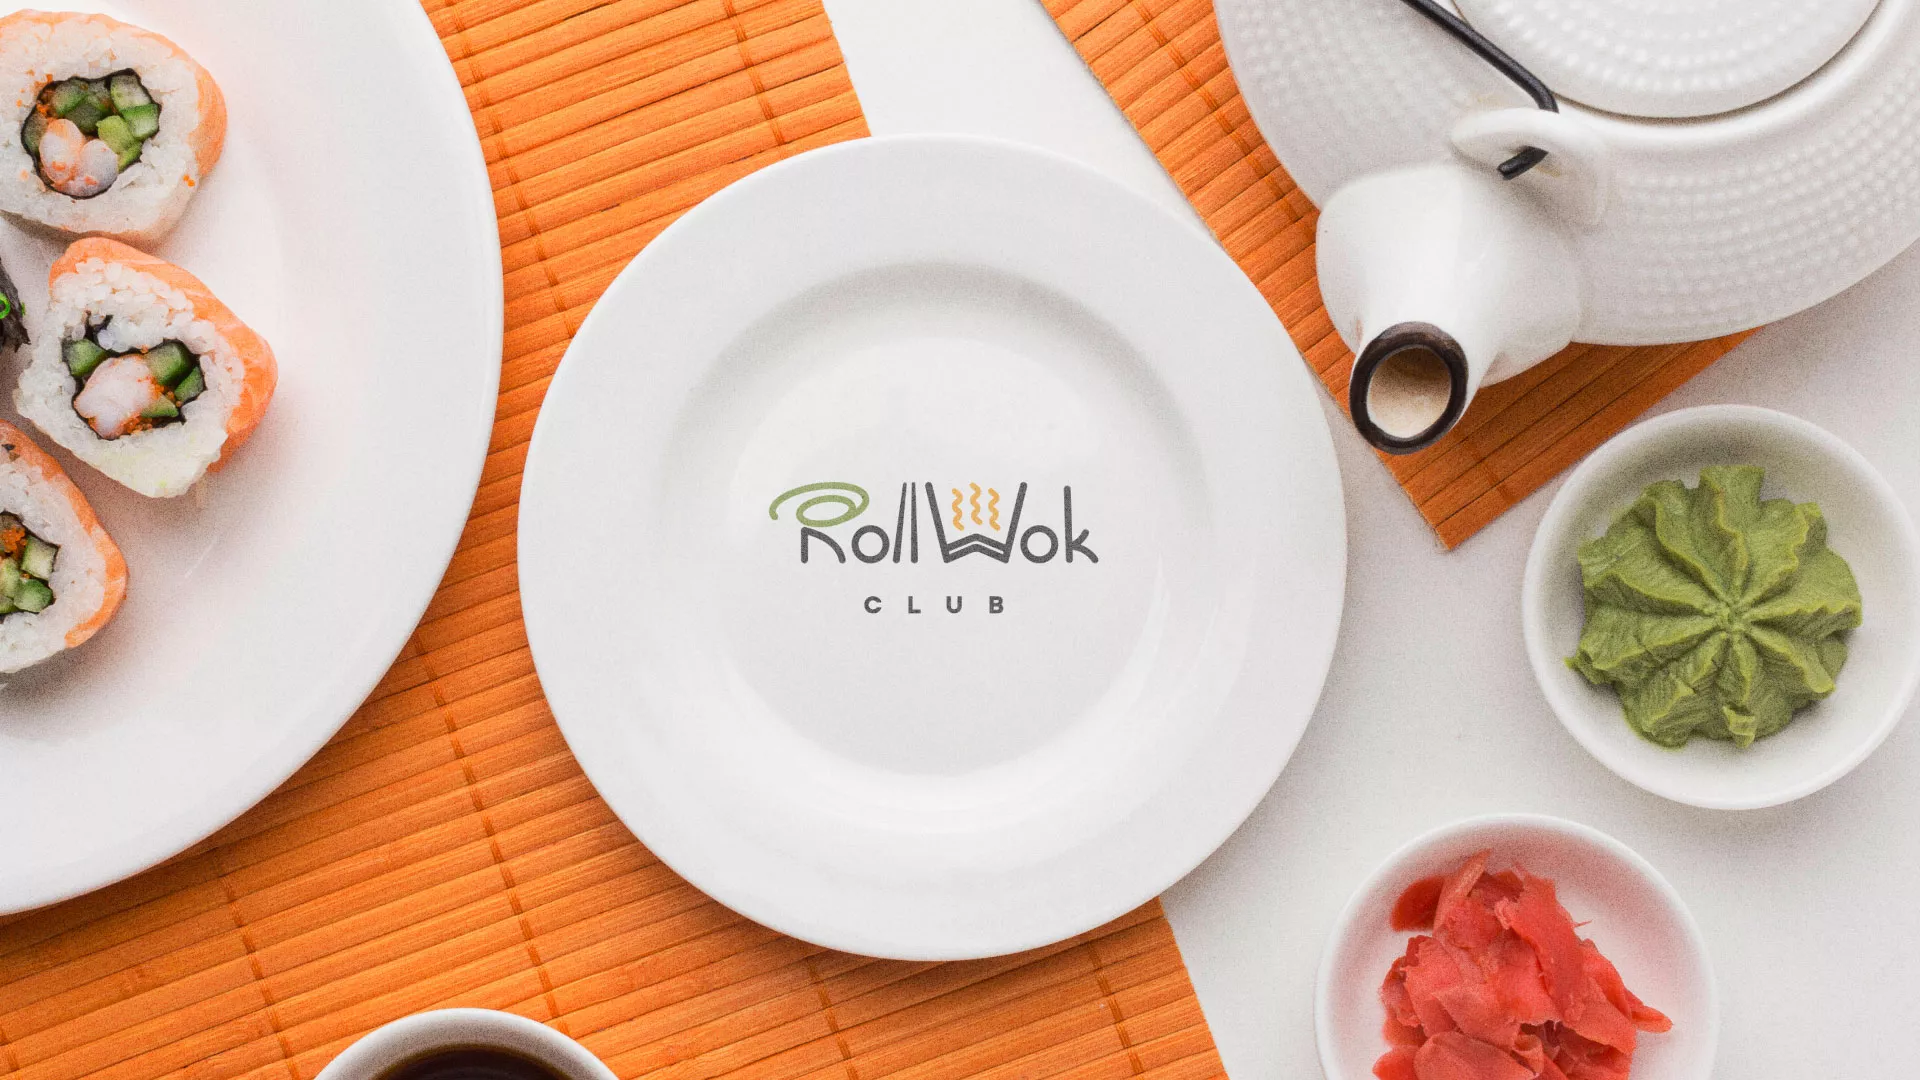 Разработка логотипа и фирменного стиля суши-бара «Roll Wok Club» в Окуловке